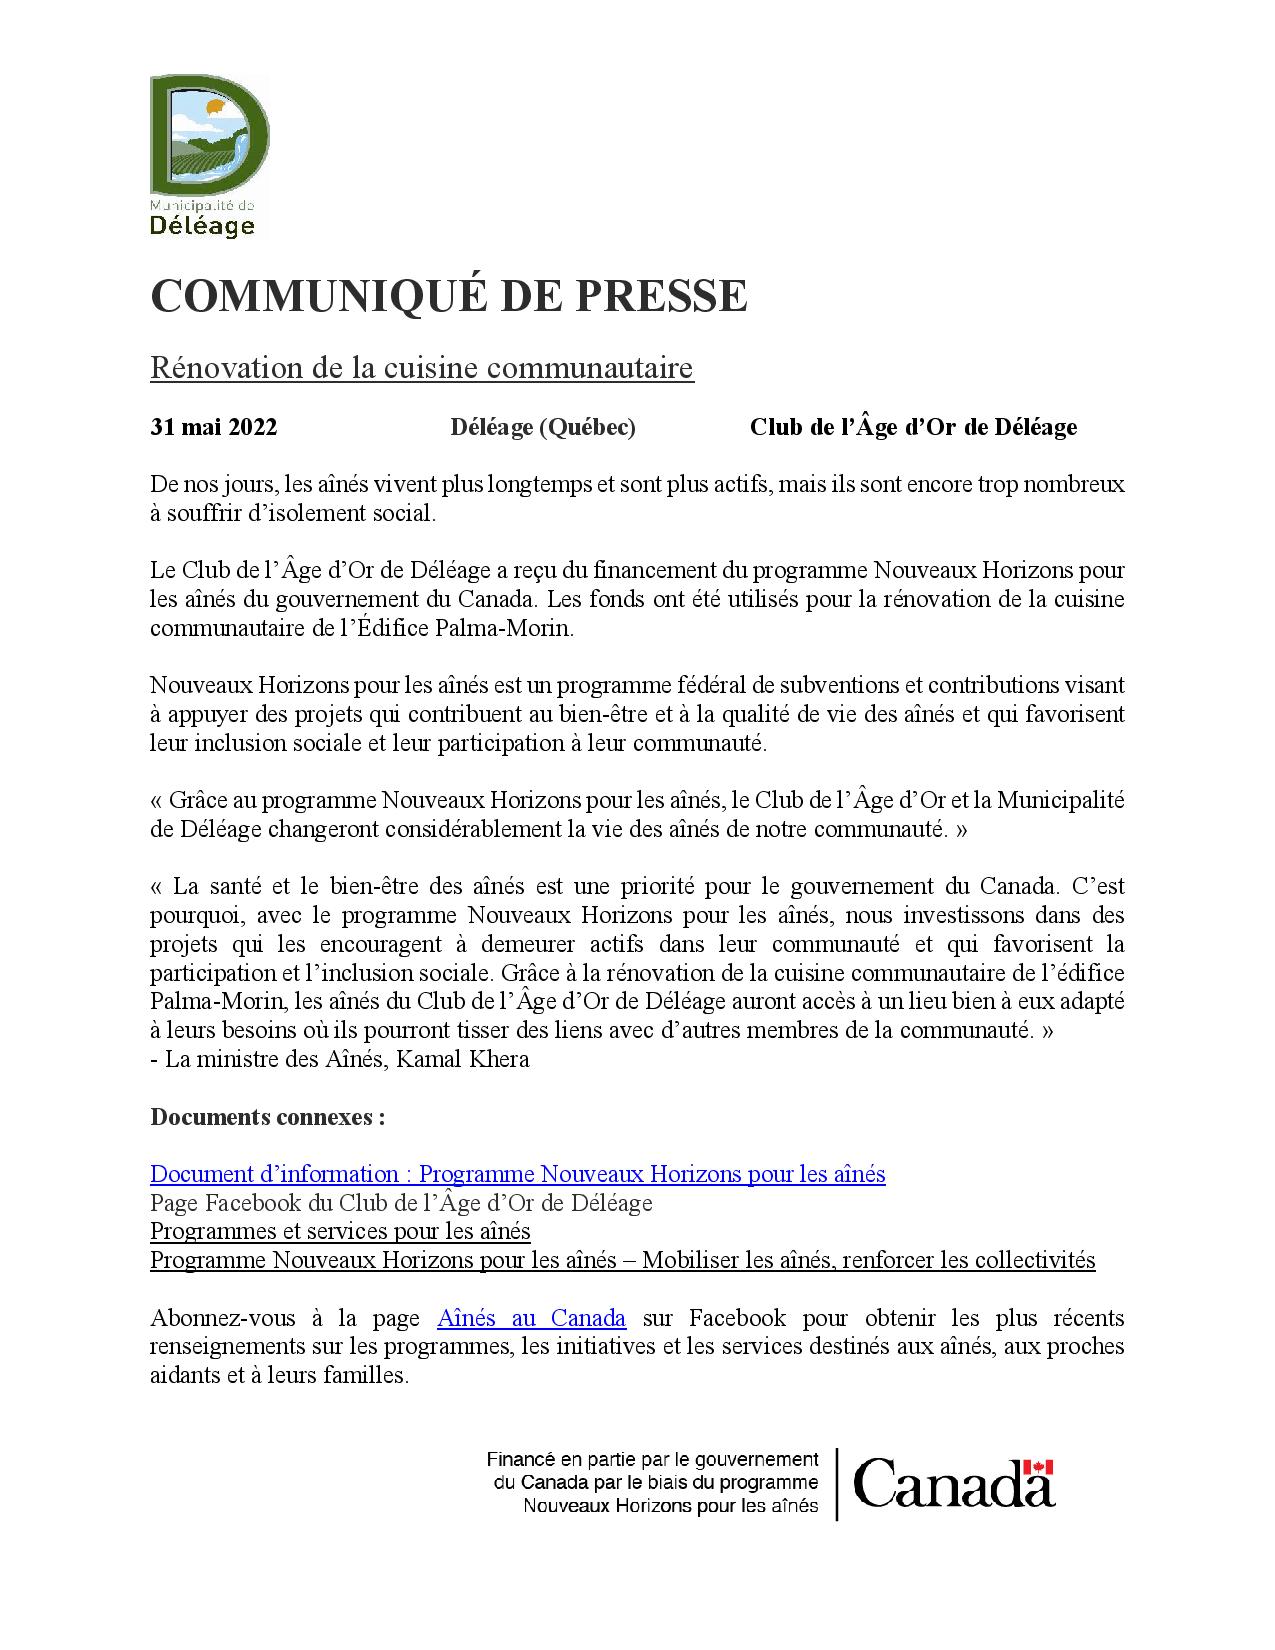 COMMUNIQUÉ_DE_PRESSE_CUISINE_COMMUNAUTAIRE2-page-001.jpg